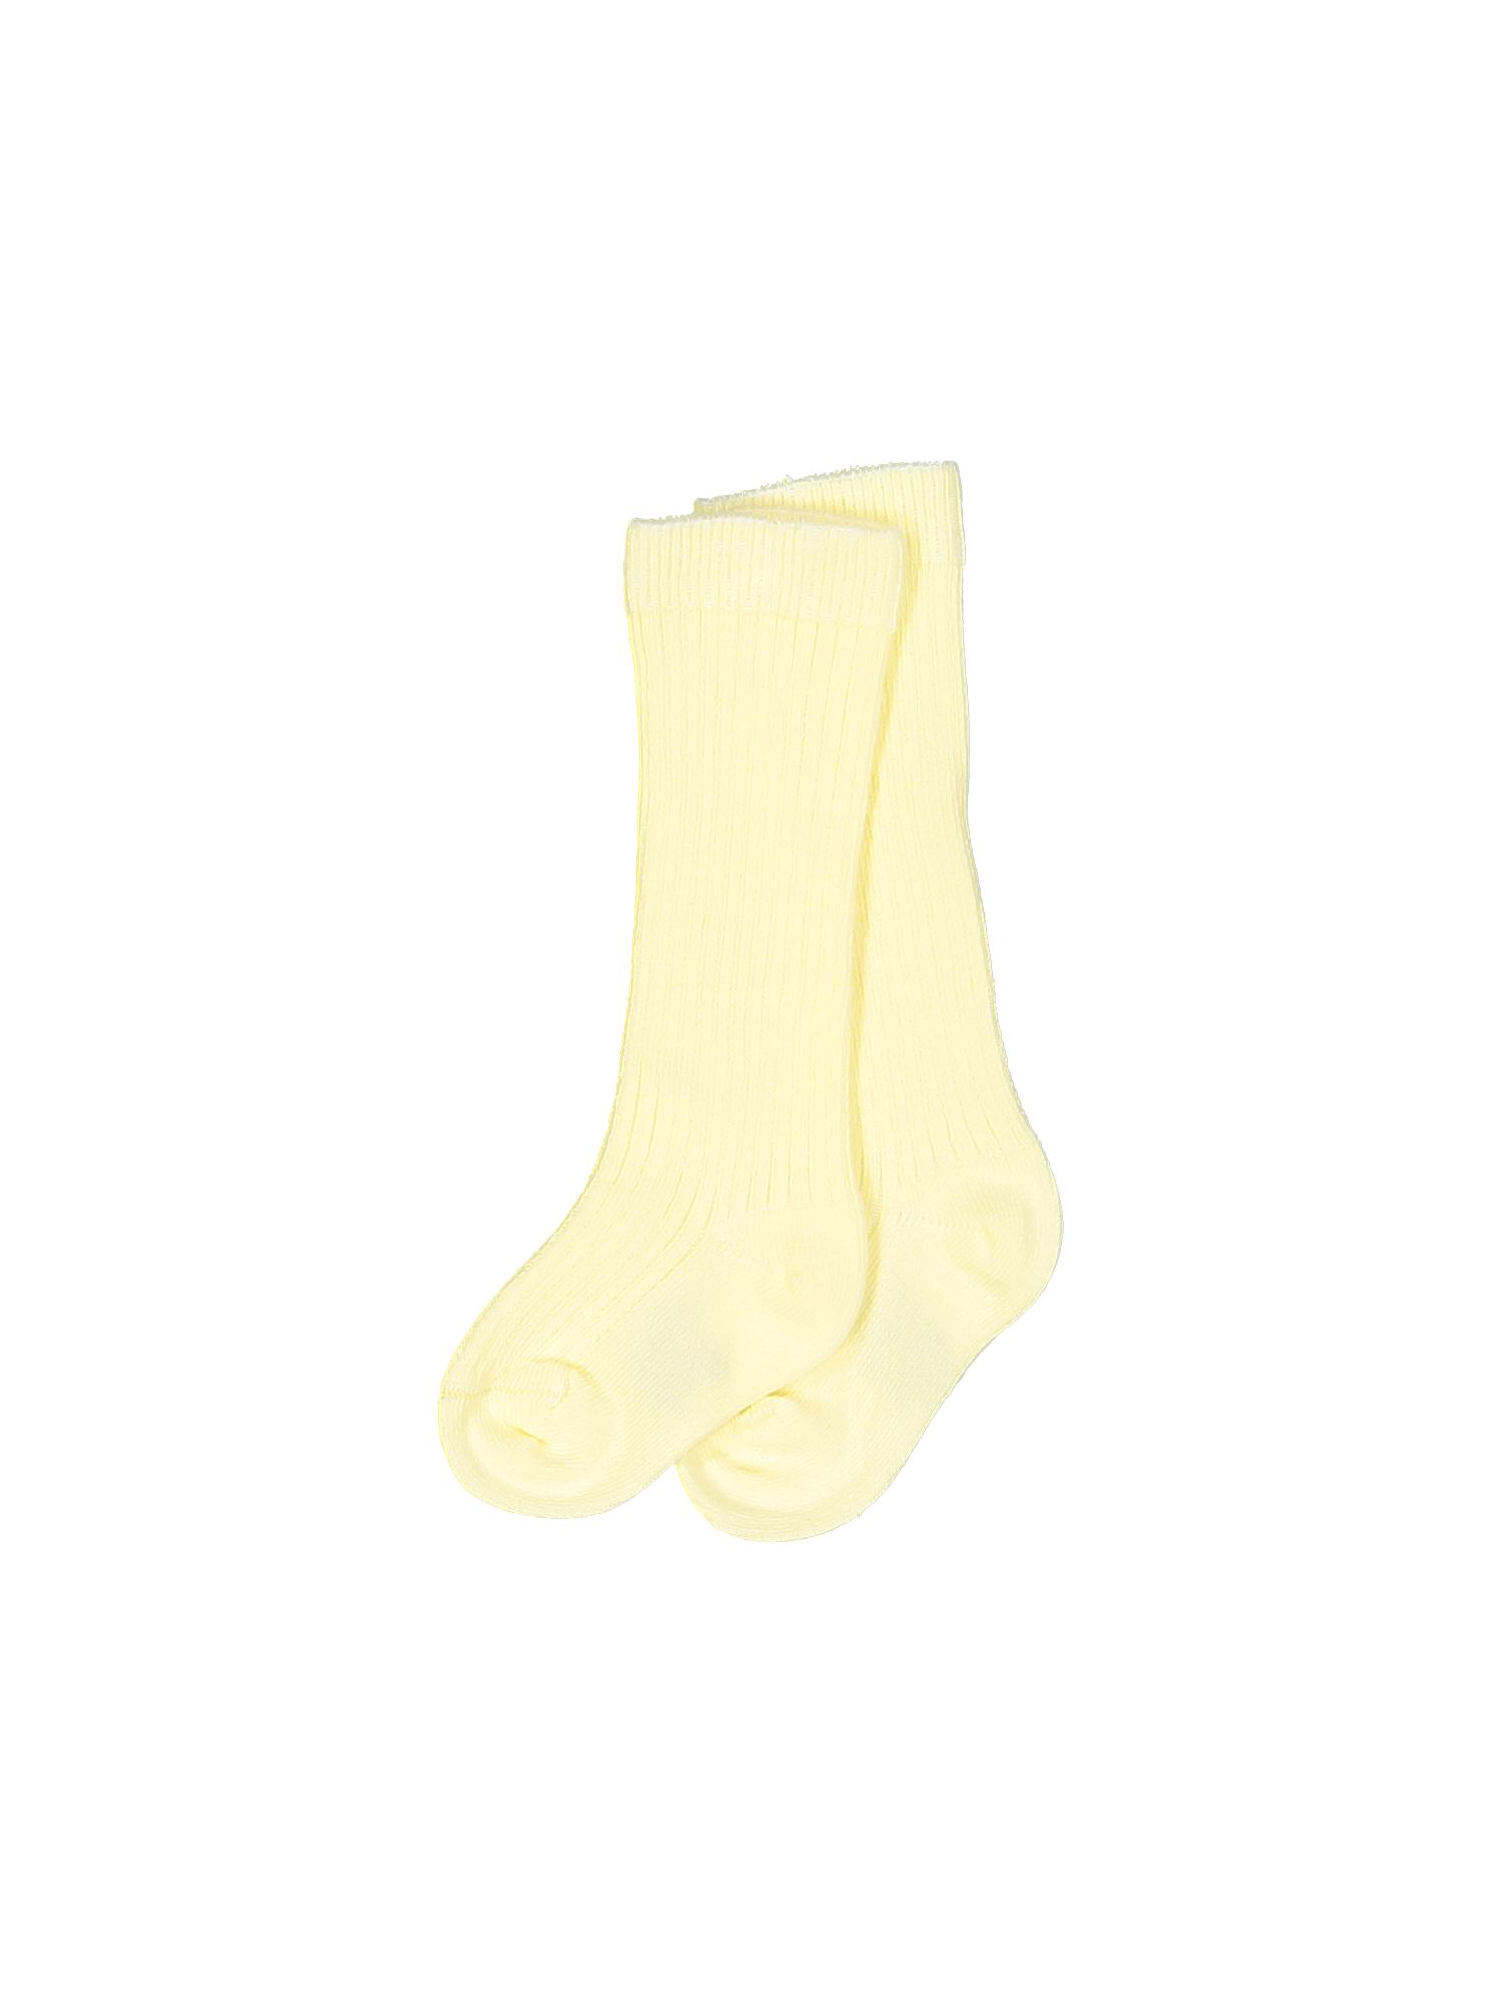 chaussettes uni jaune clair